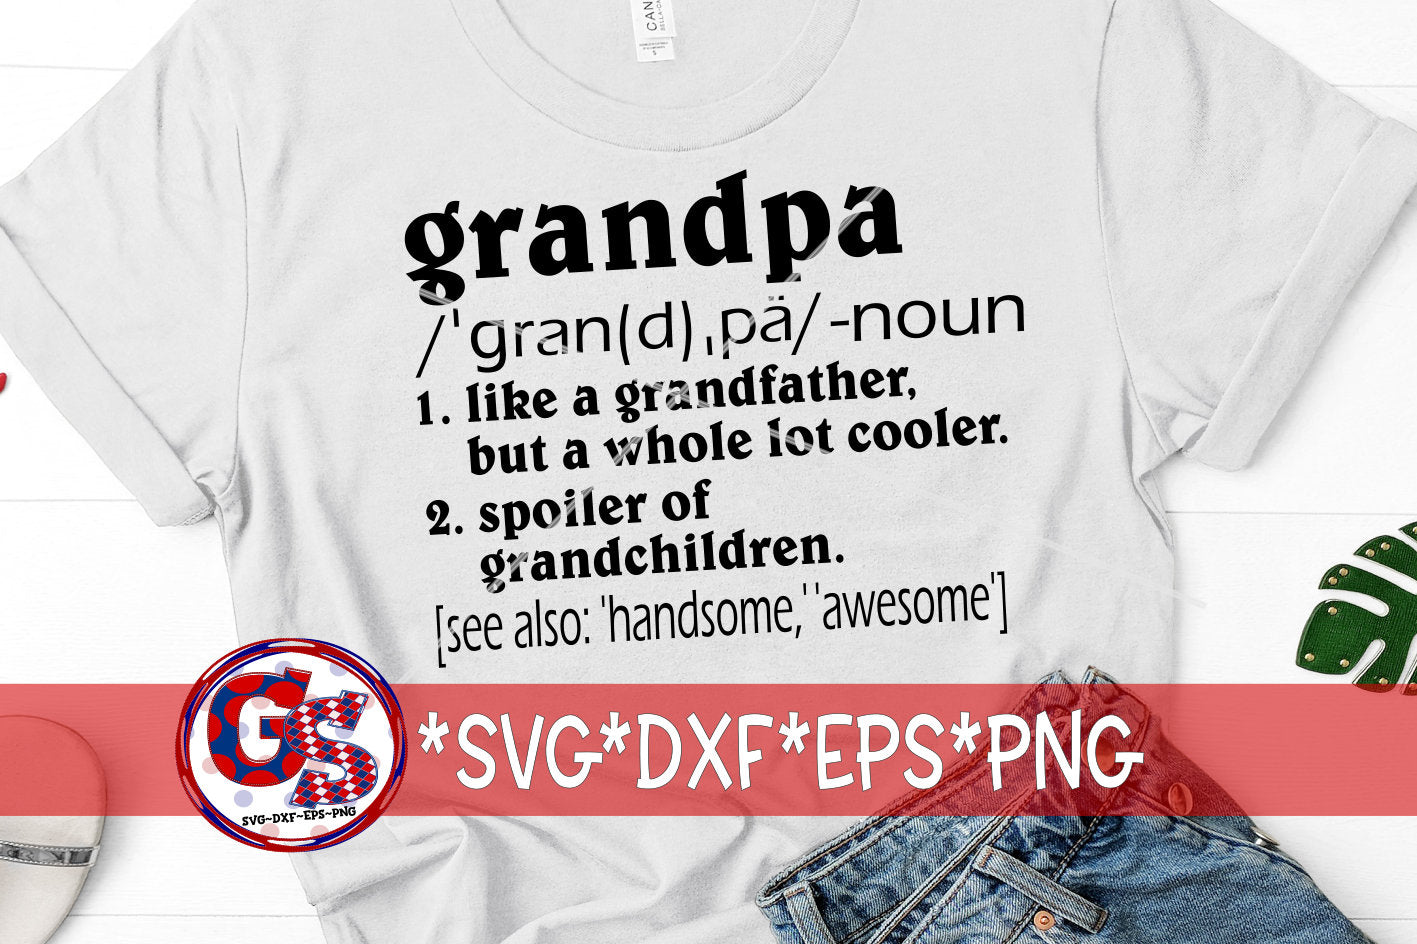 Father&#39;s Day | Grandpa | Grandpa Definition svg, dxf, eps, png. Father&#39;s Day SVG | Grandpa SVG | Instant Download Cut File.